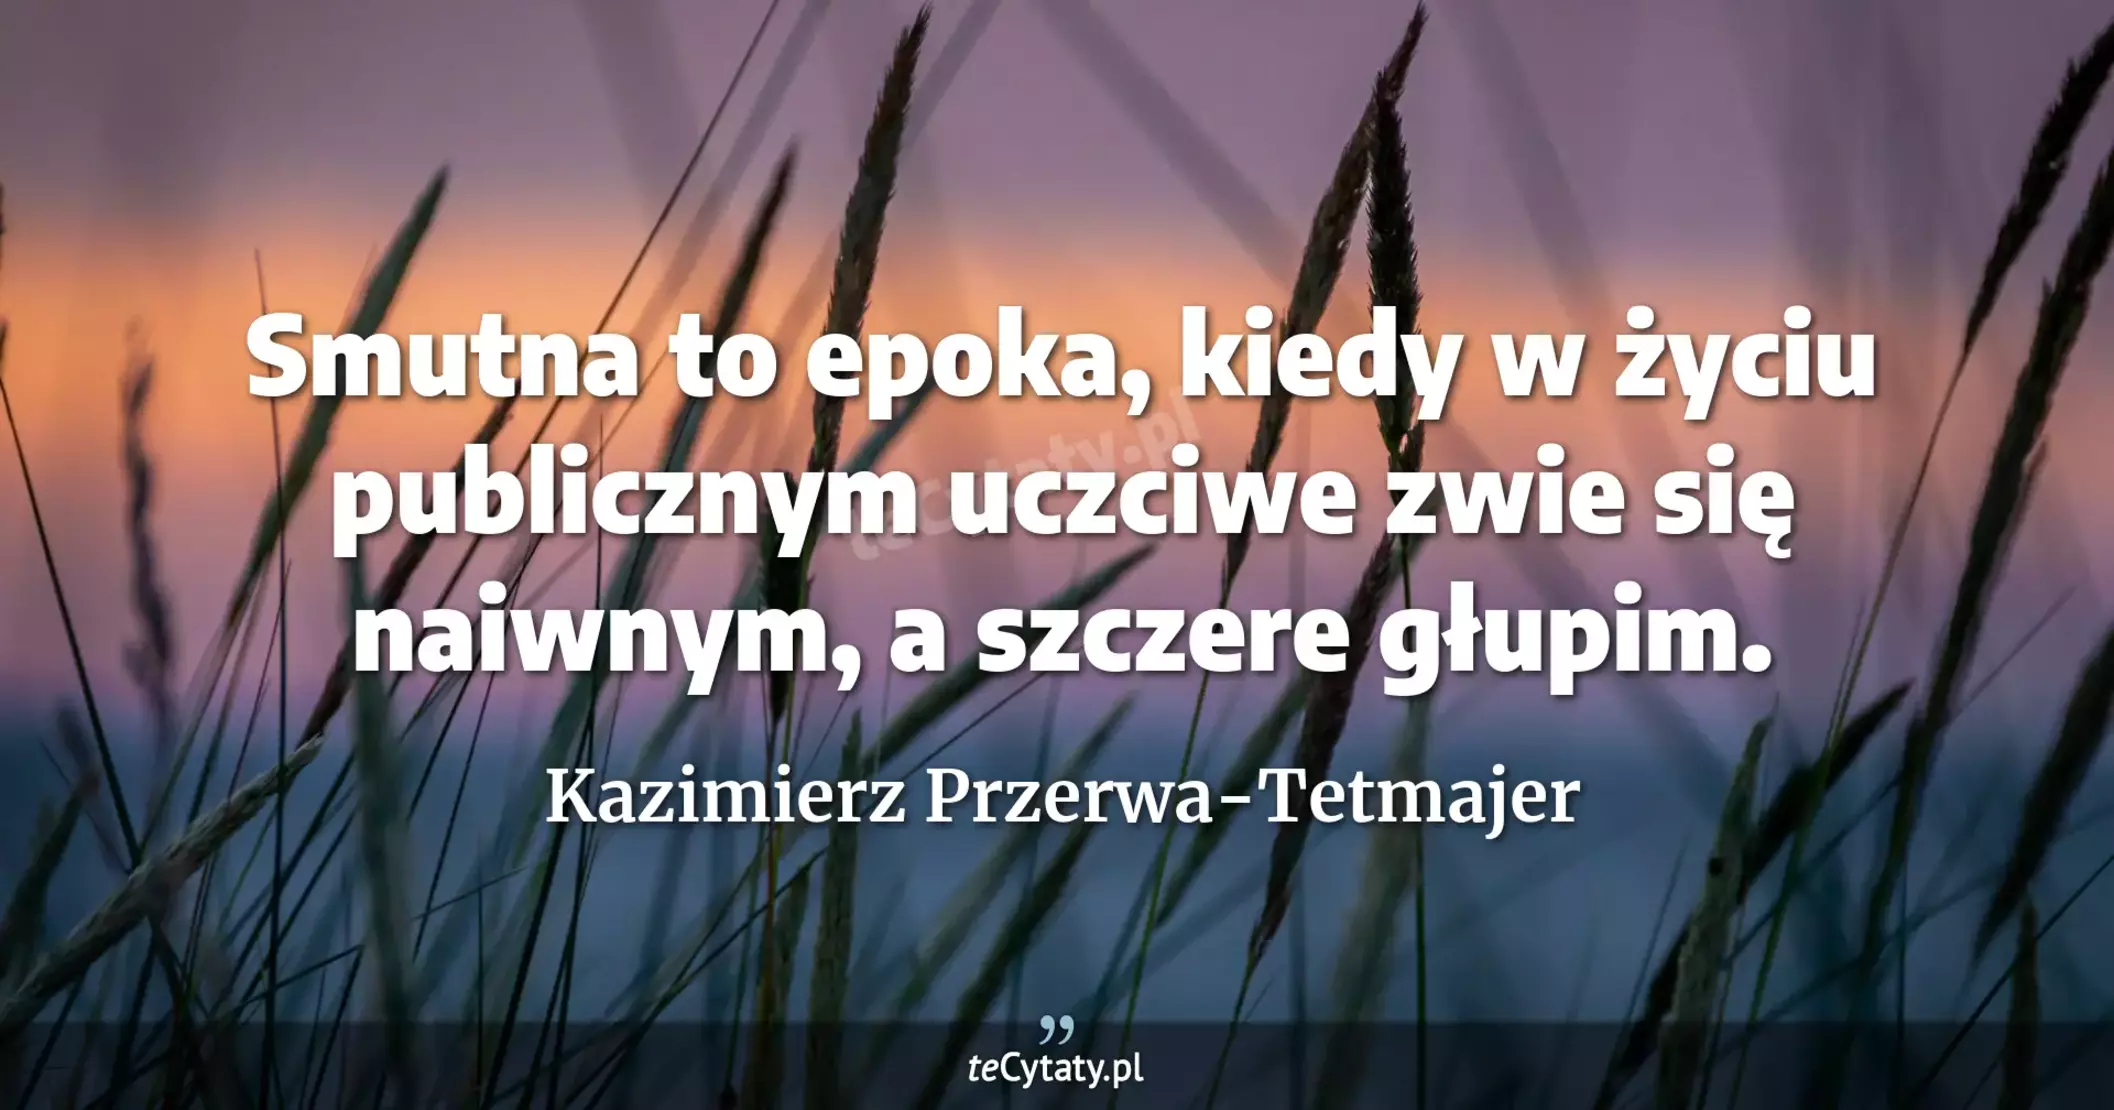 Smutna to epoka, kiedy w życiu publicznym uczciwe zwie się naiwnym, a szczere głupim. - Kazimierz Przerwa-Tetmajer